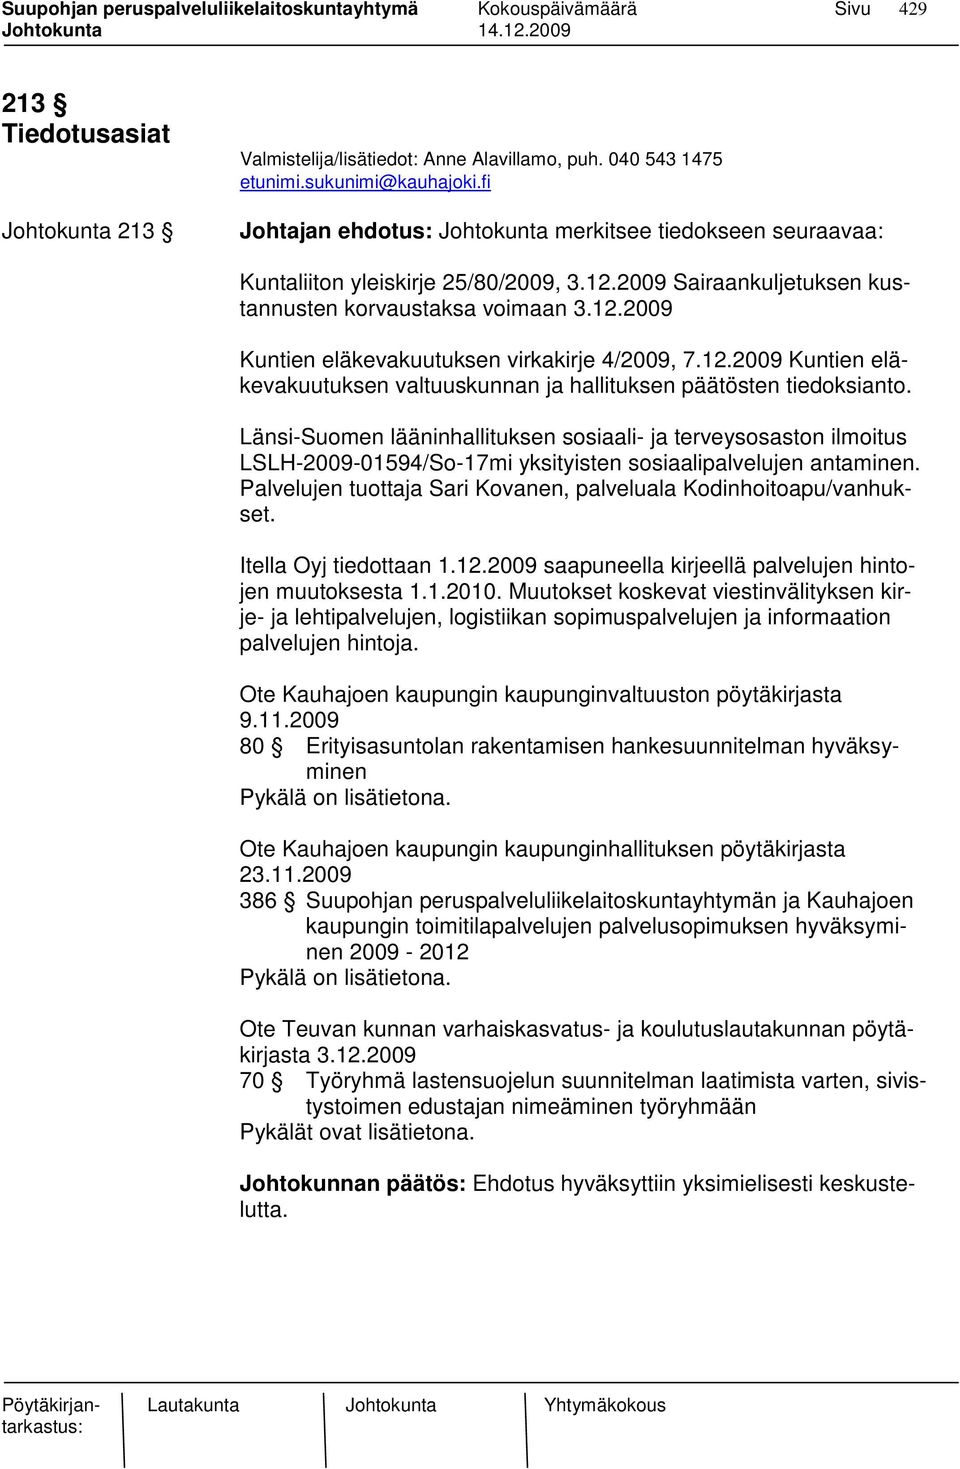 Länsi-Suomen lääninhallituksen sosiaali- ja terveysosaston ilmoitus LSLH-2009-01594/So-17mi yksityisten sosiaalipalvelujen antaminen.